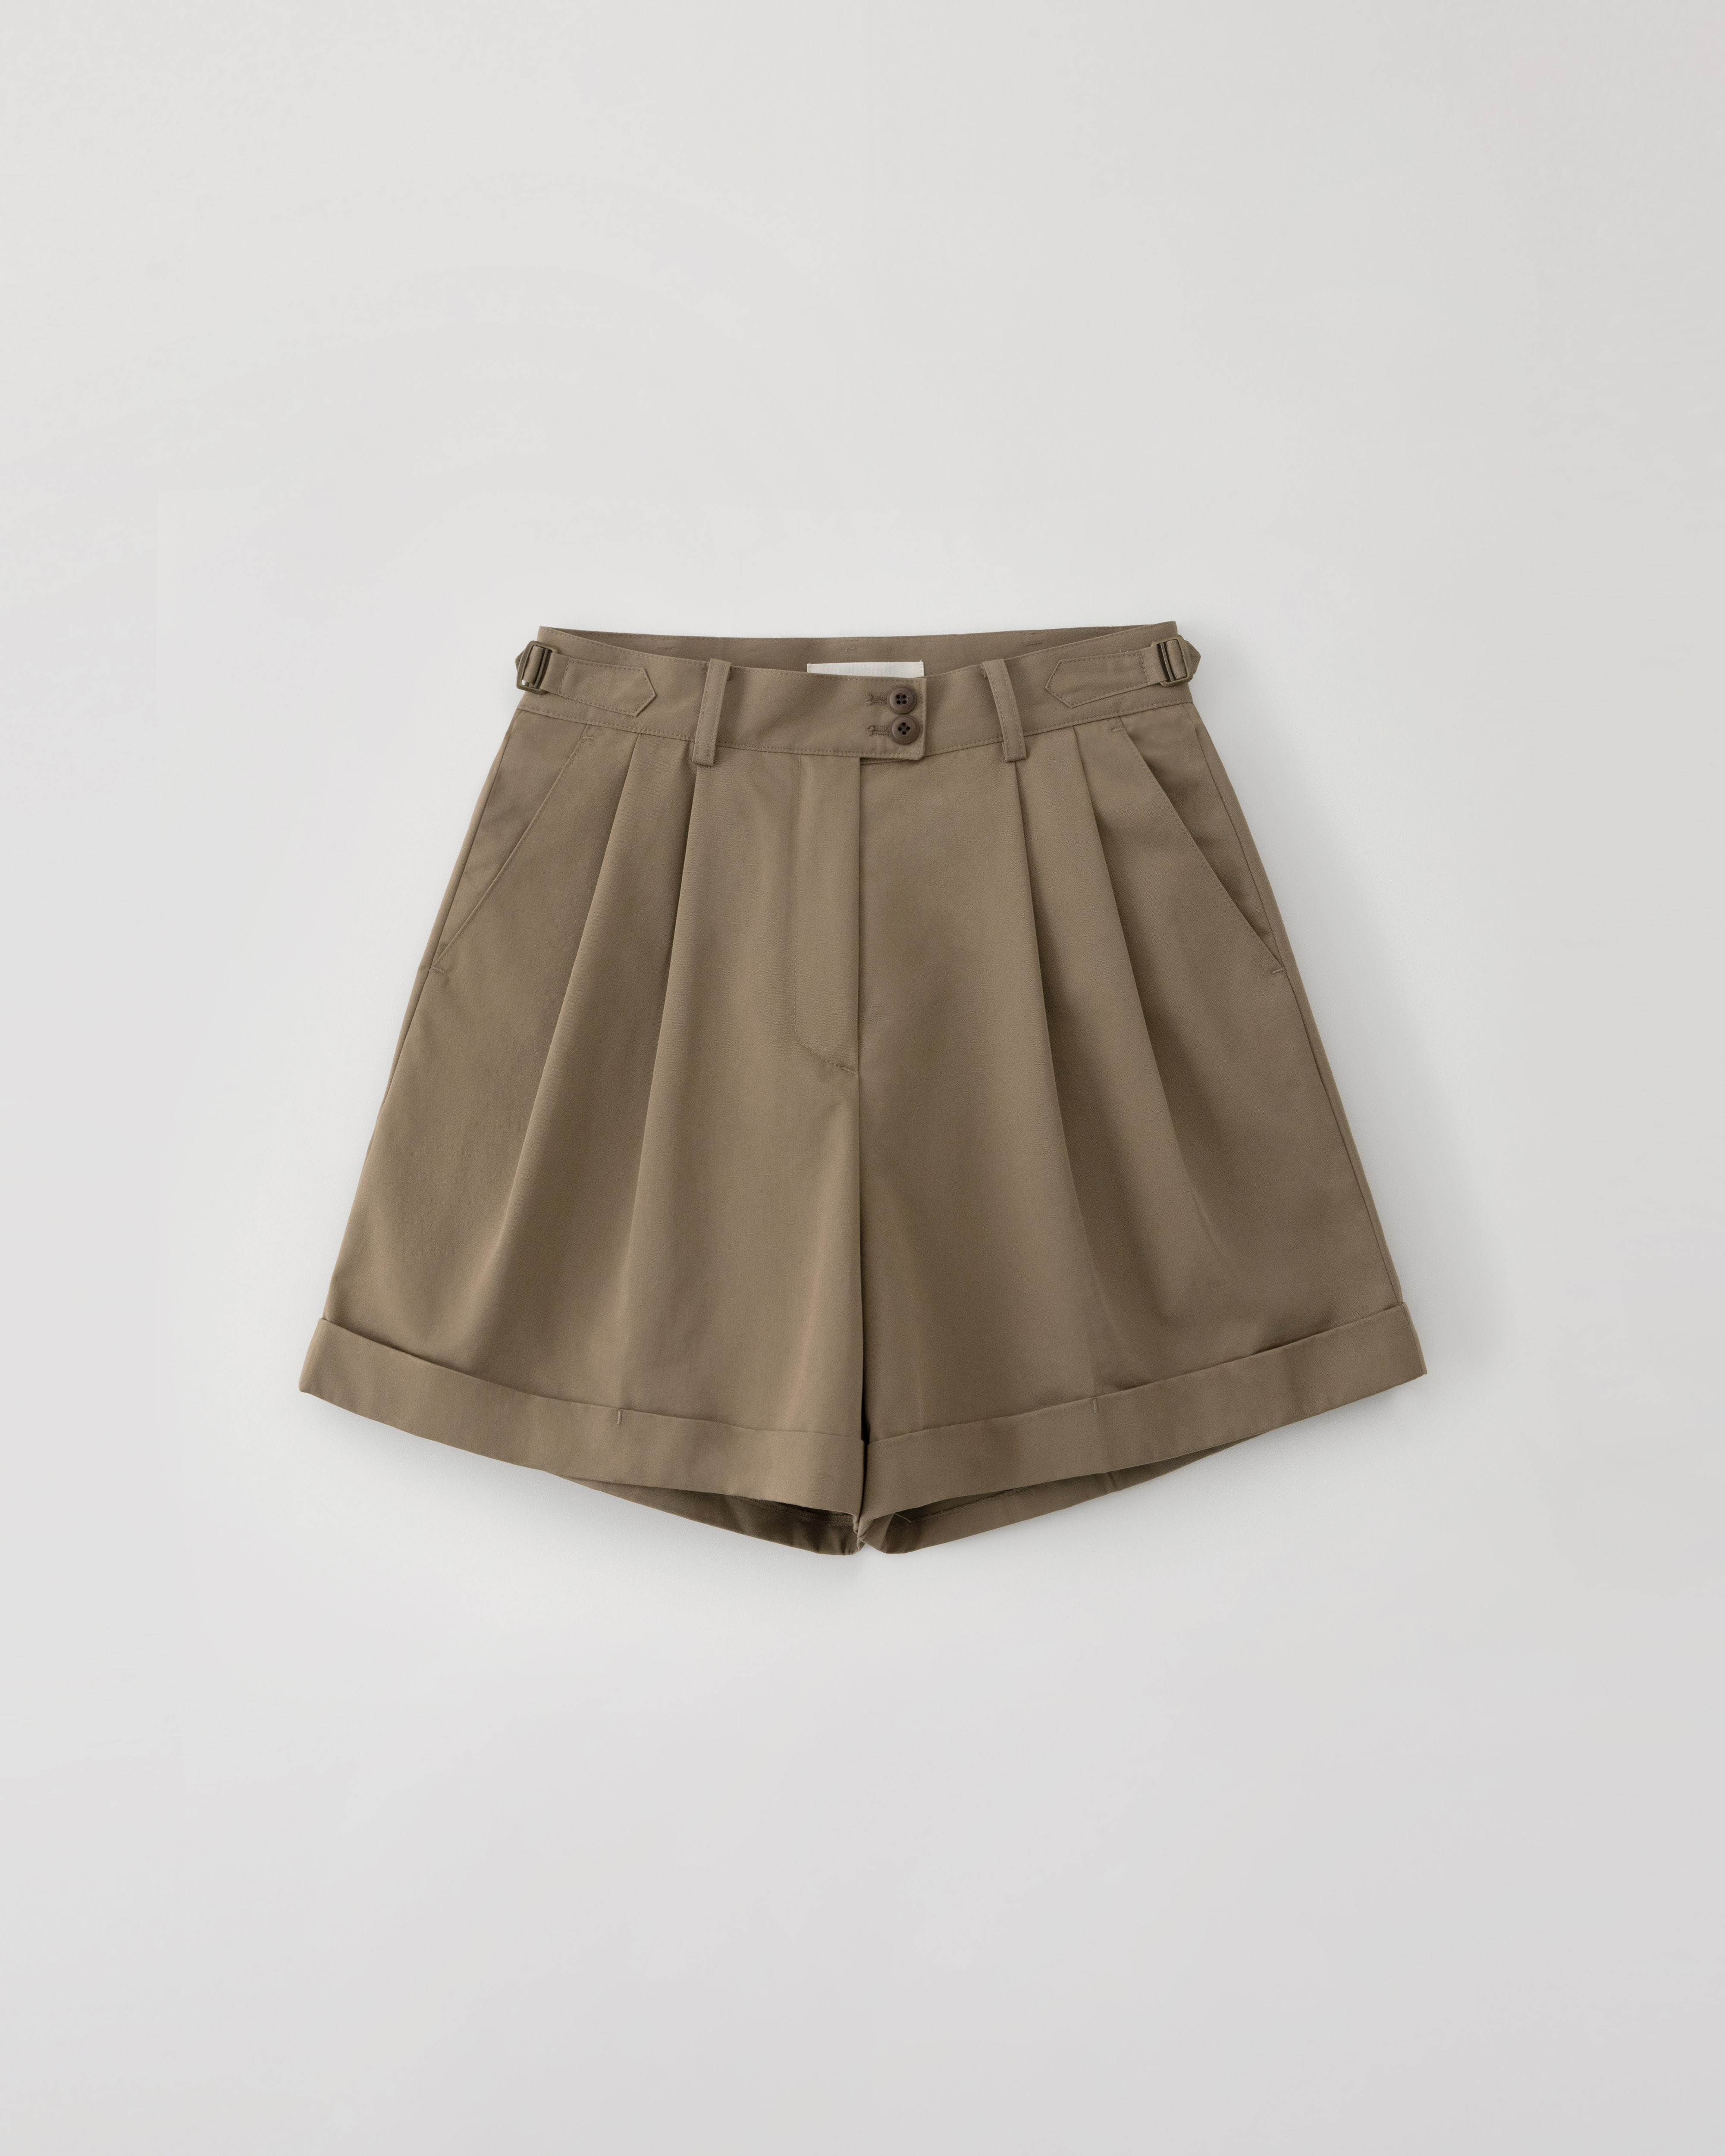 4/26 15:00 재입고 예정 (예약판매) Winnona travel shorts - mocha brown